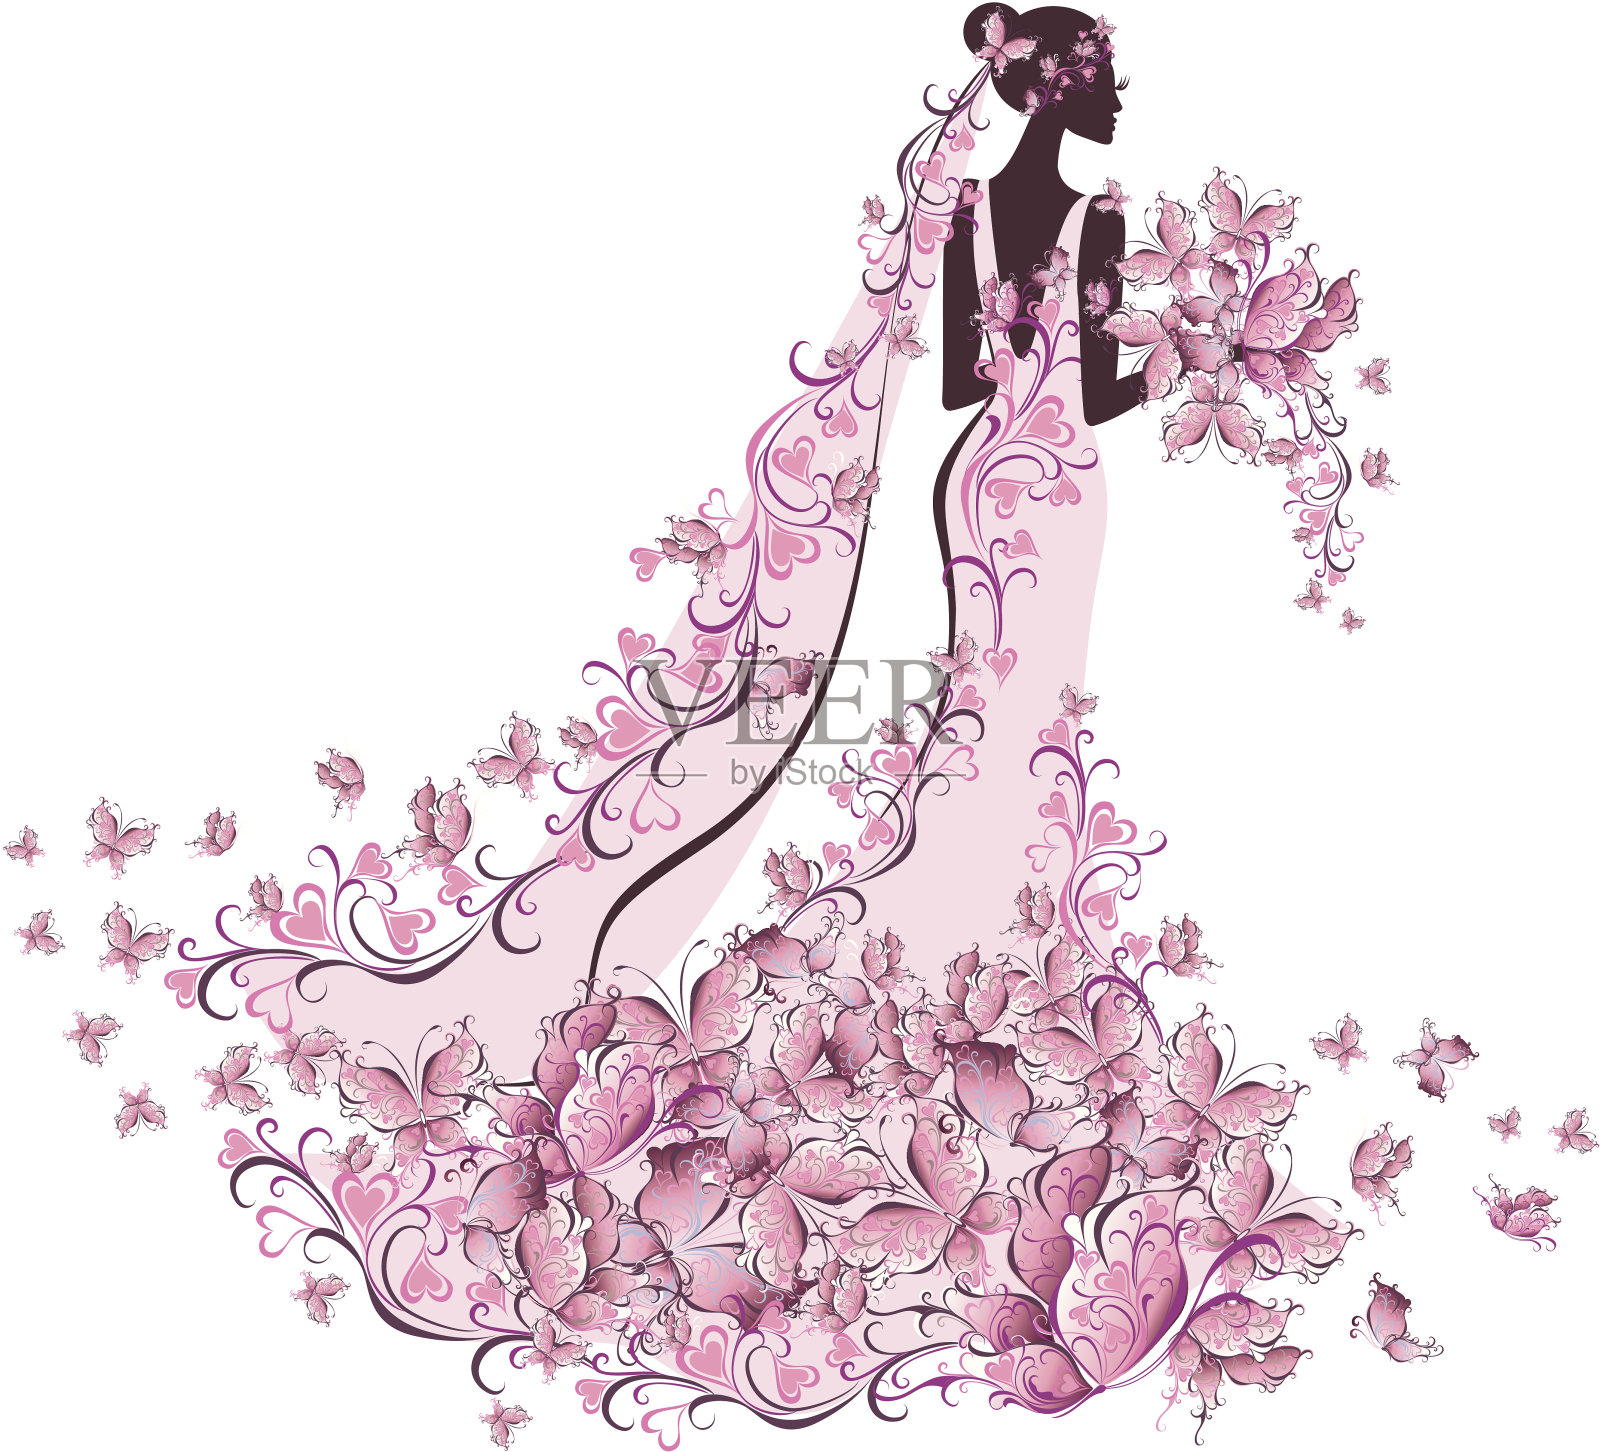 新娘穿着粉红色的礼服，后面有粉红色的蝴蝶插画图片素材